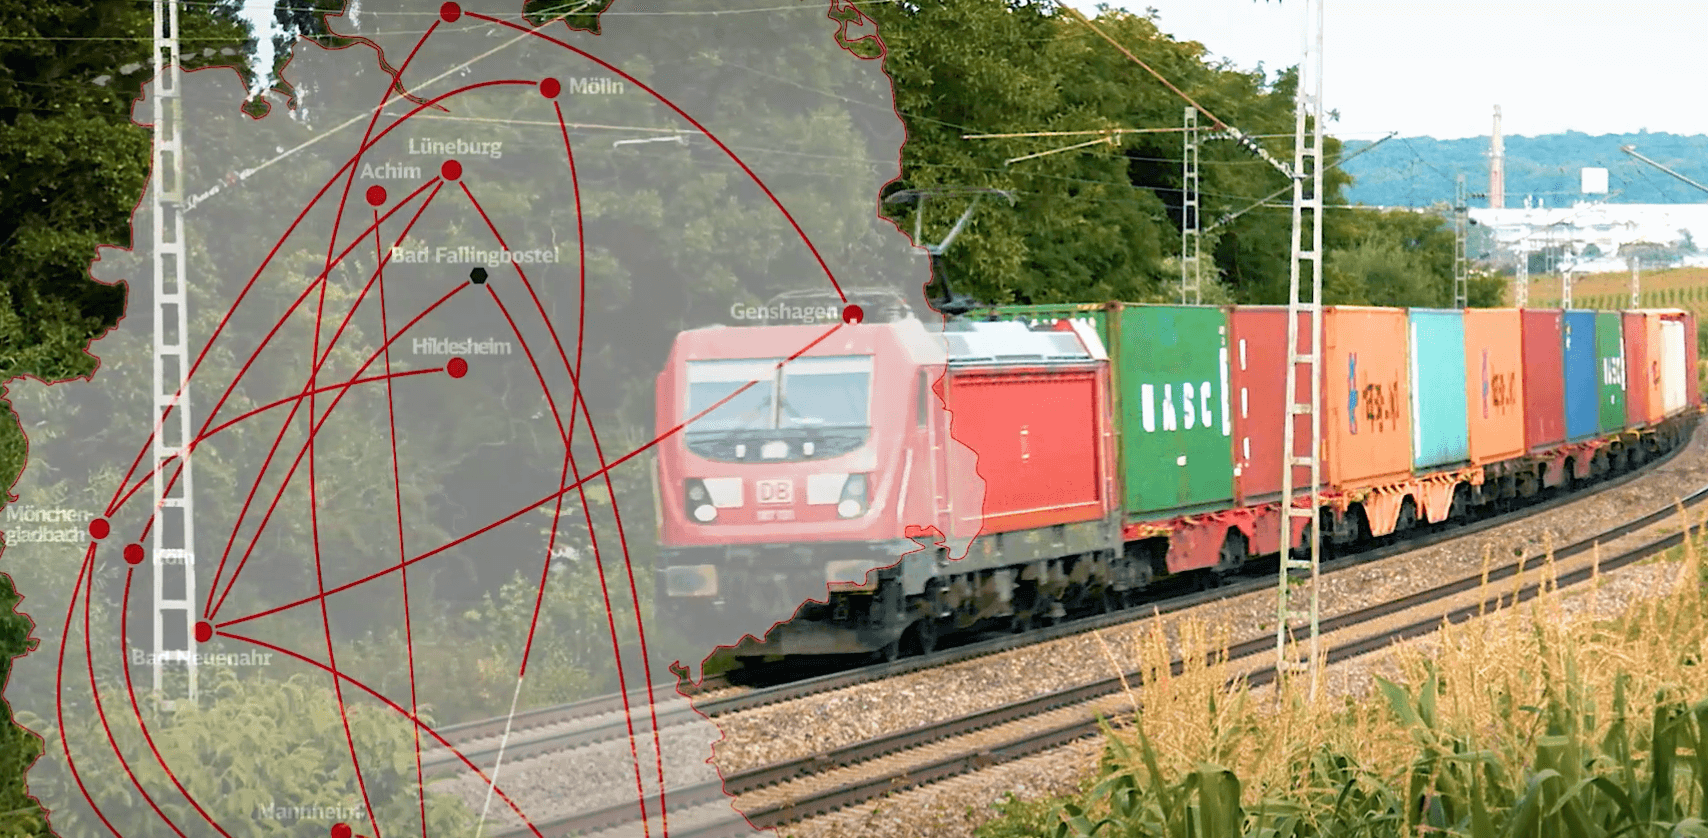 Coca-Cola’s spoorgoederenvervoer netwerk via DB CARGO